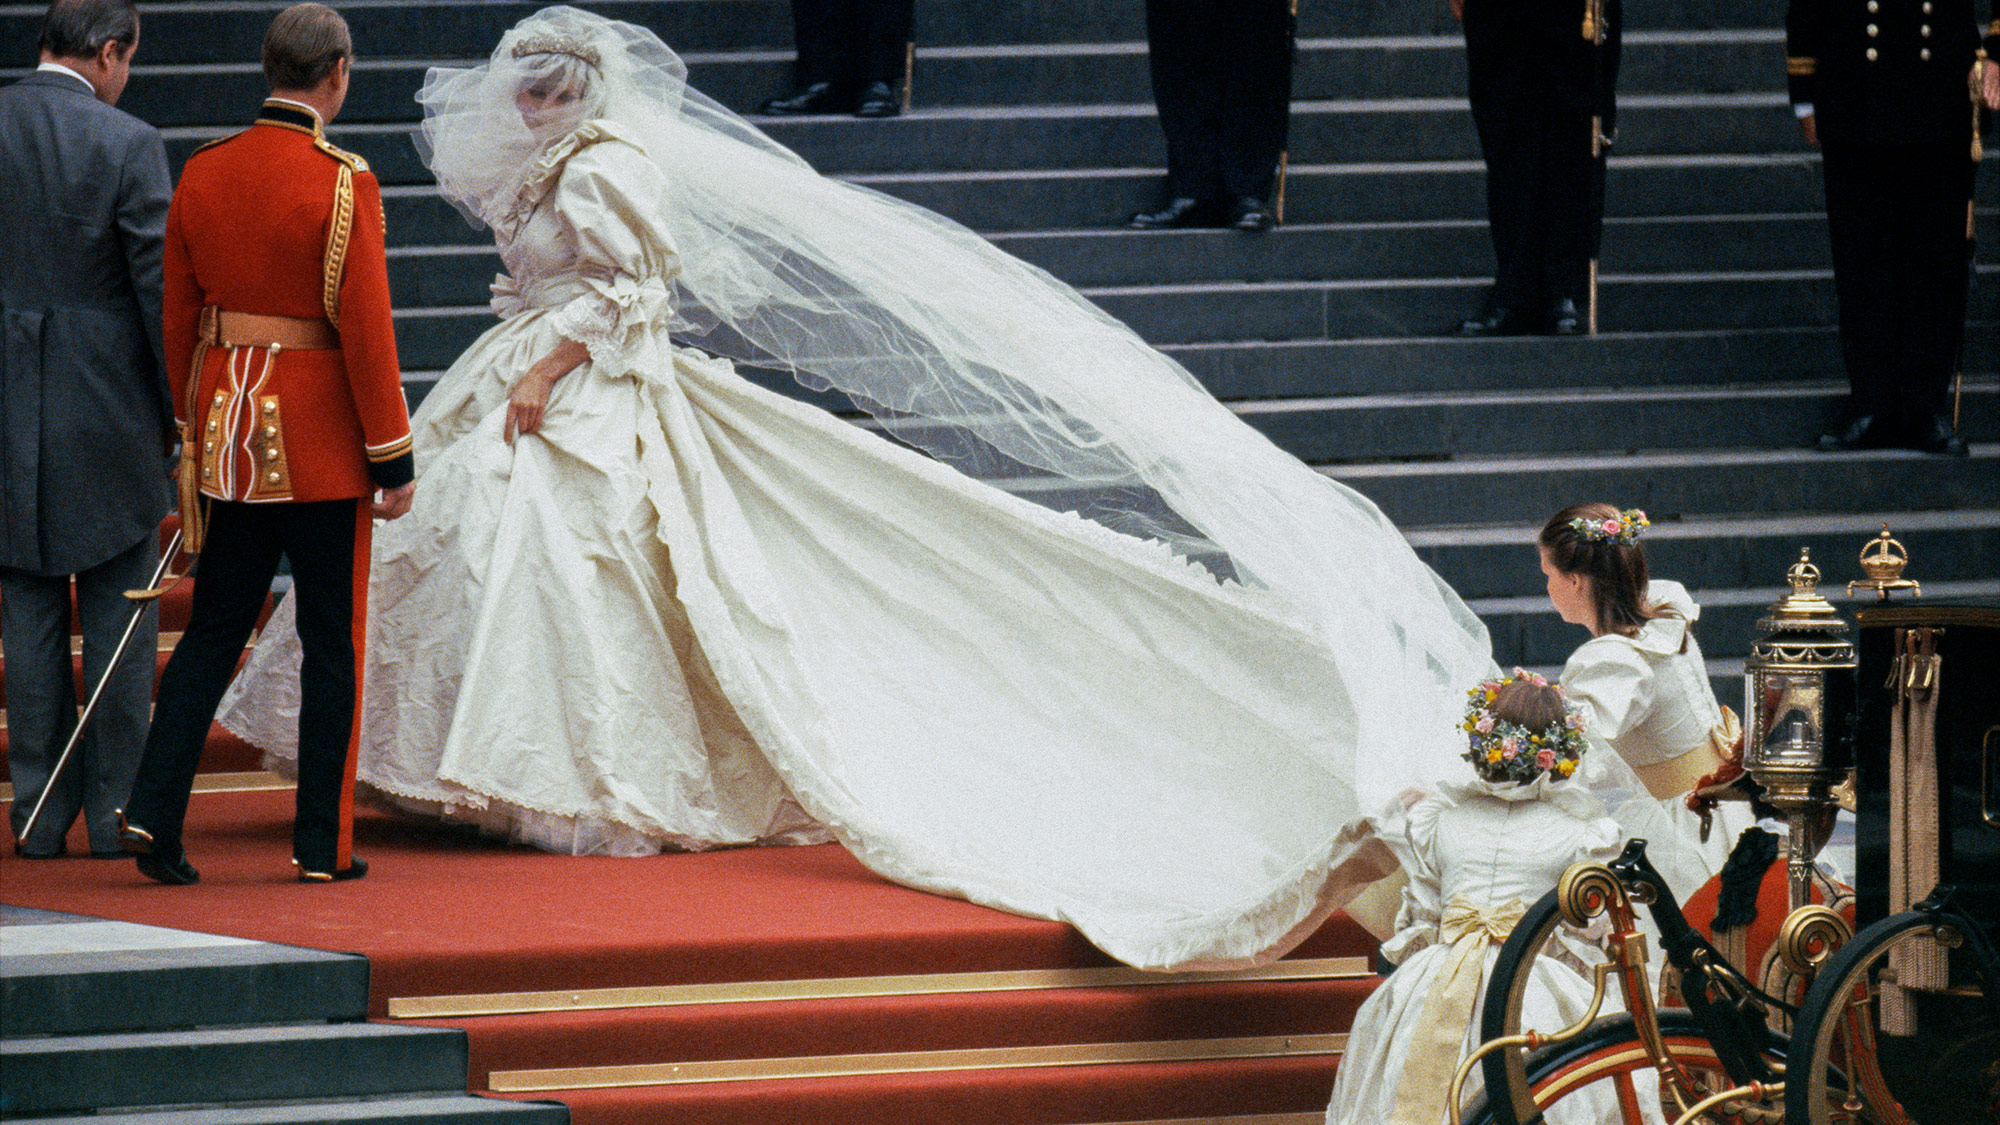 Princess Diana had a secret umbrella made to match her wedding dress